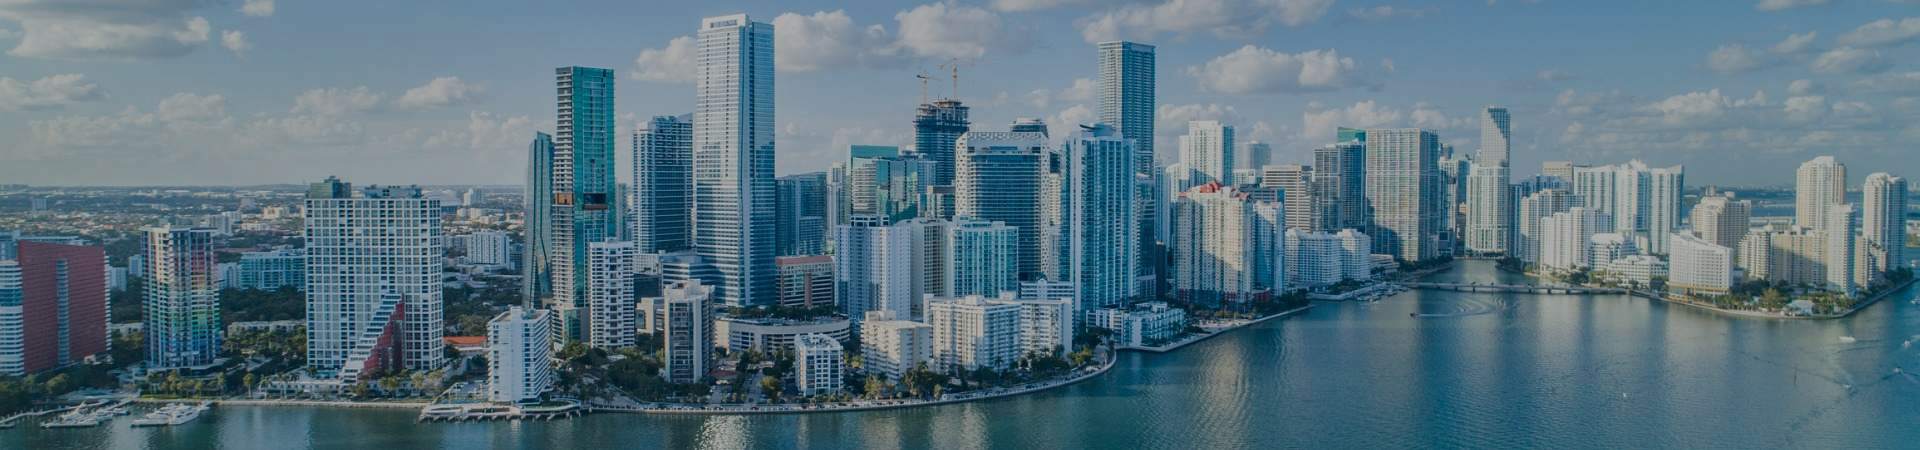 Jobs in Miami